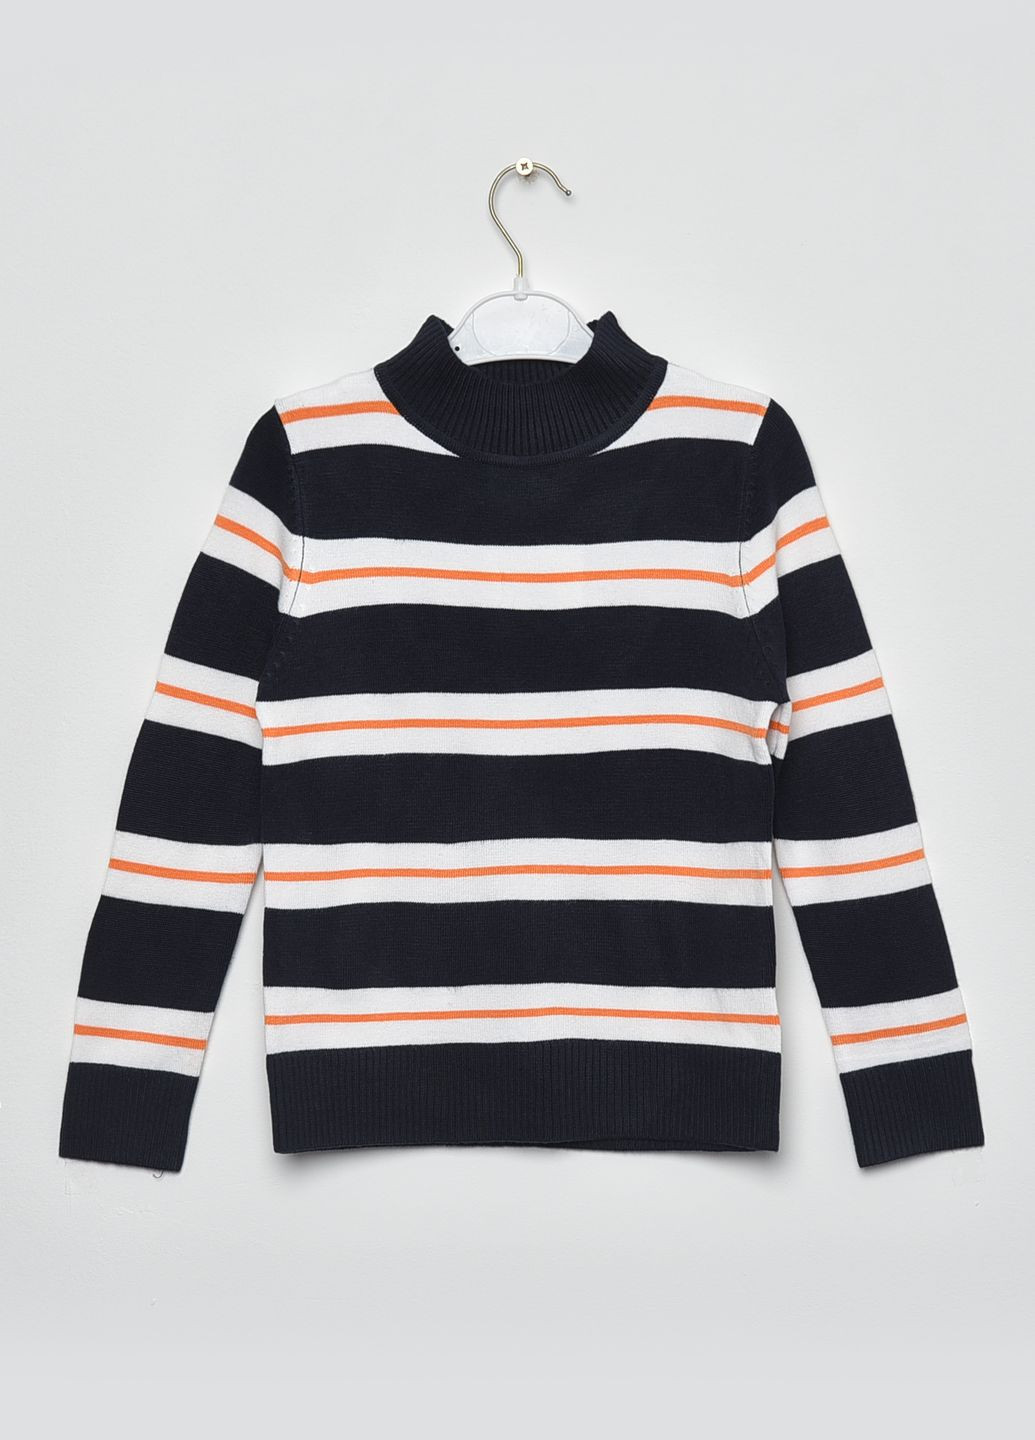 Серый демисезонный свитер детский для мальчика темно-синего цвета в полоску пуловер Let's Shop